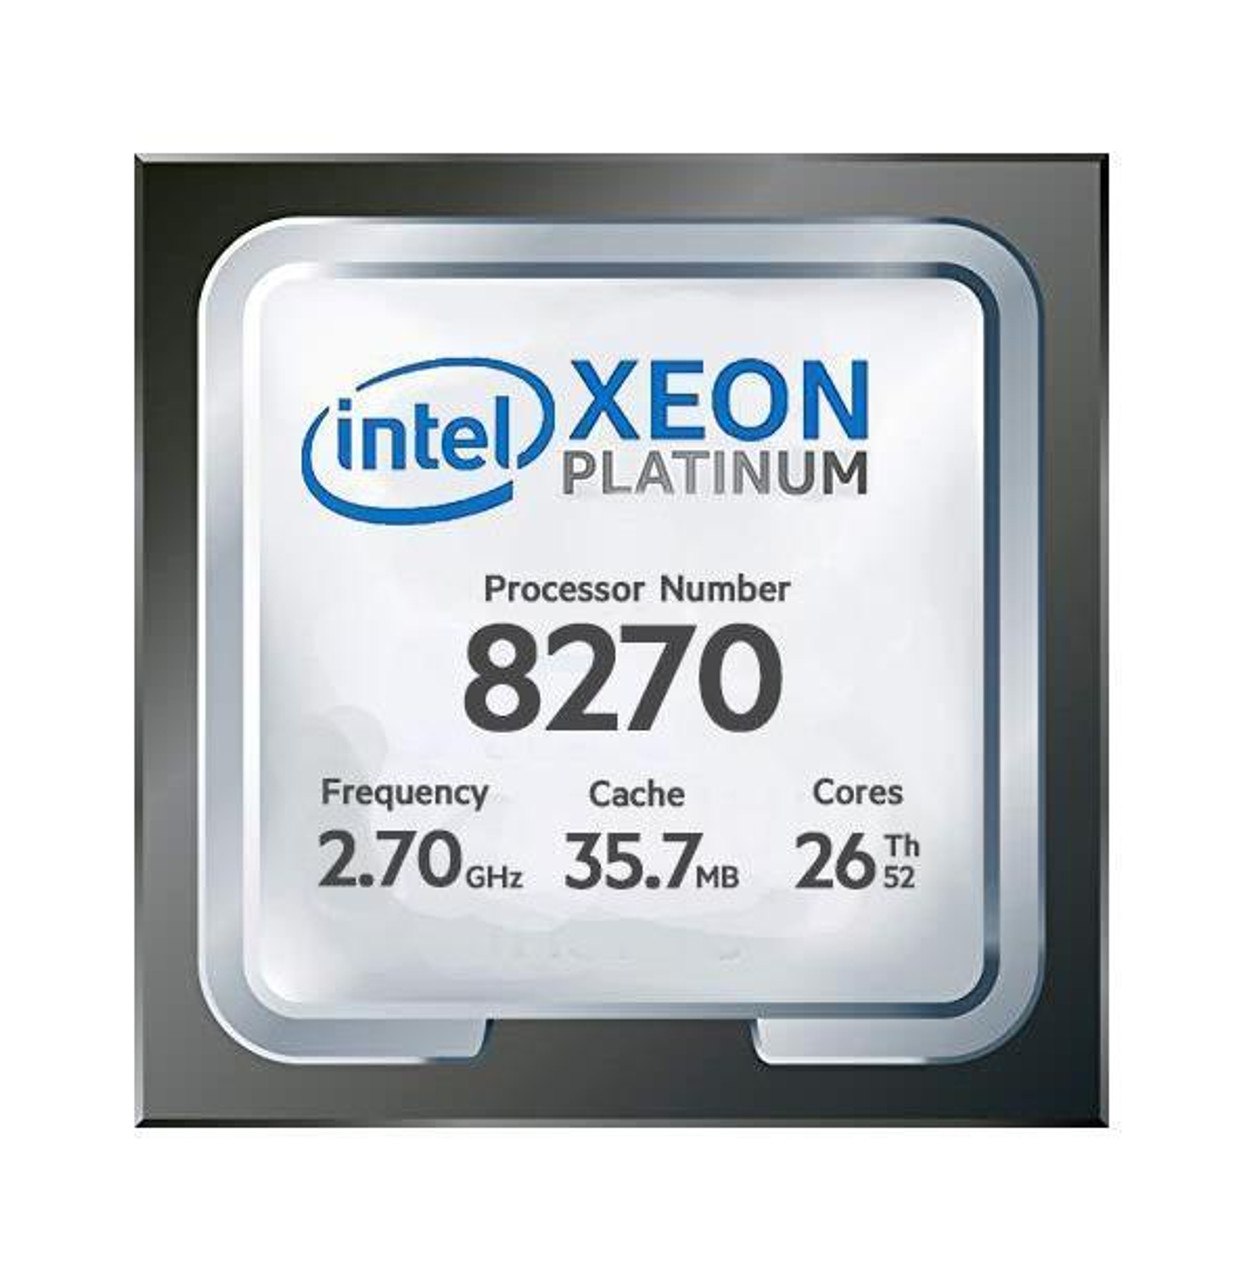 Dell CPU Kit Intel Xeon Platinum 26 Core Processor 8270 2.70GHz 35.75mb Cache Tdp 205w Fclga3647 For Dell Precision 7920 Tower